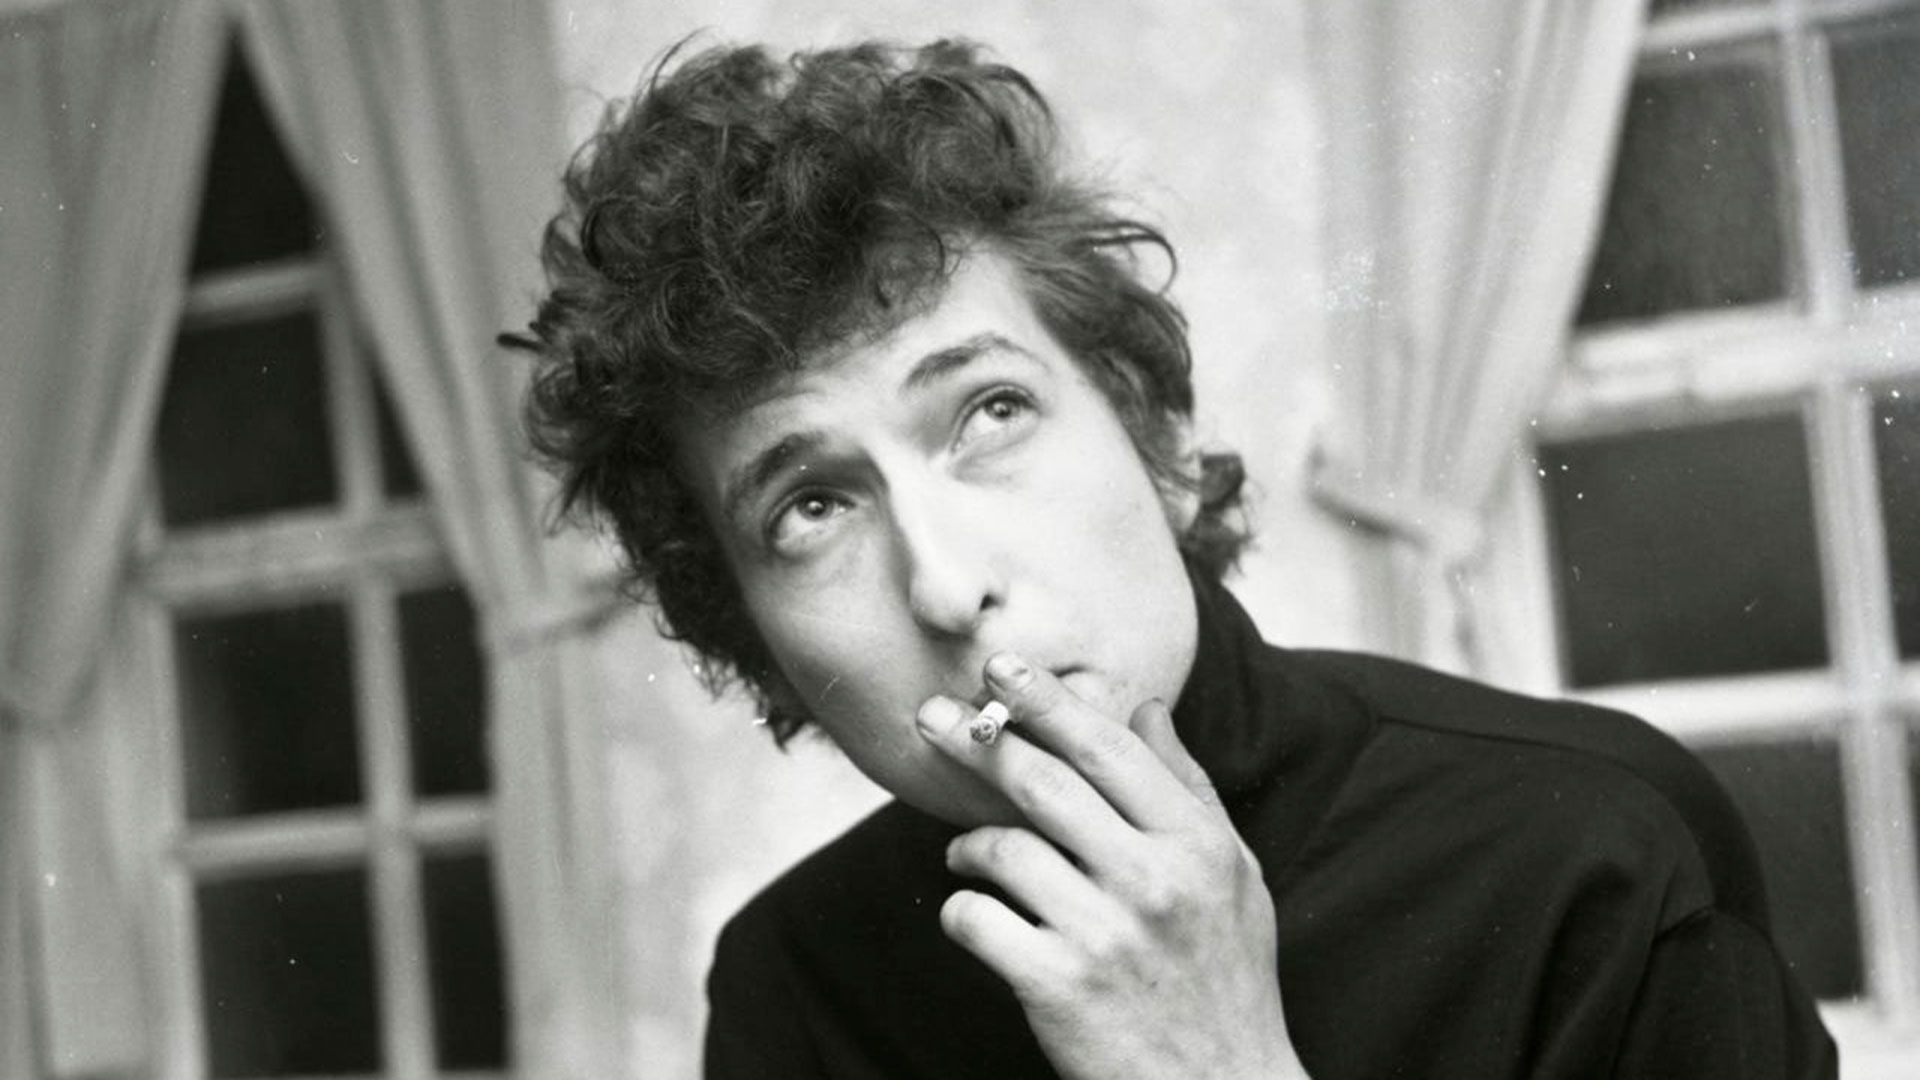 En 2016, Bob Dylan se convirtió en el primer músico en recibir el premio Nobel de Literatura, lo cual generó todo tipo de debates y controversias.